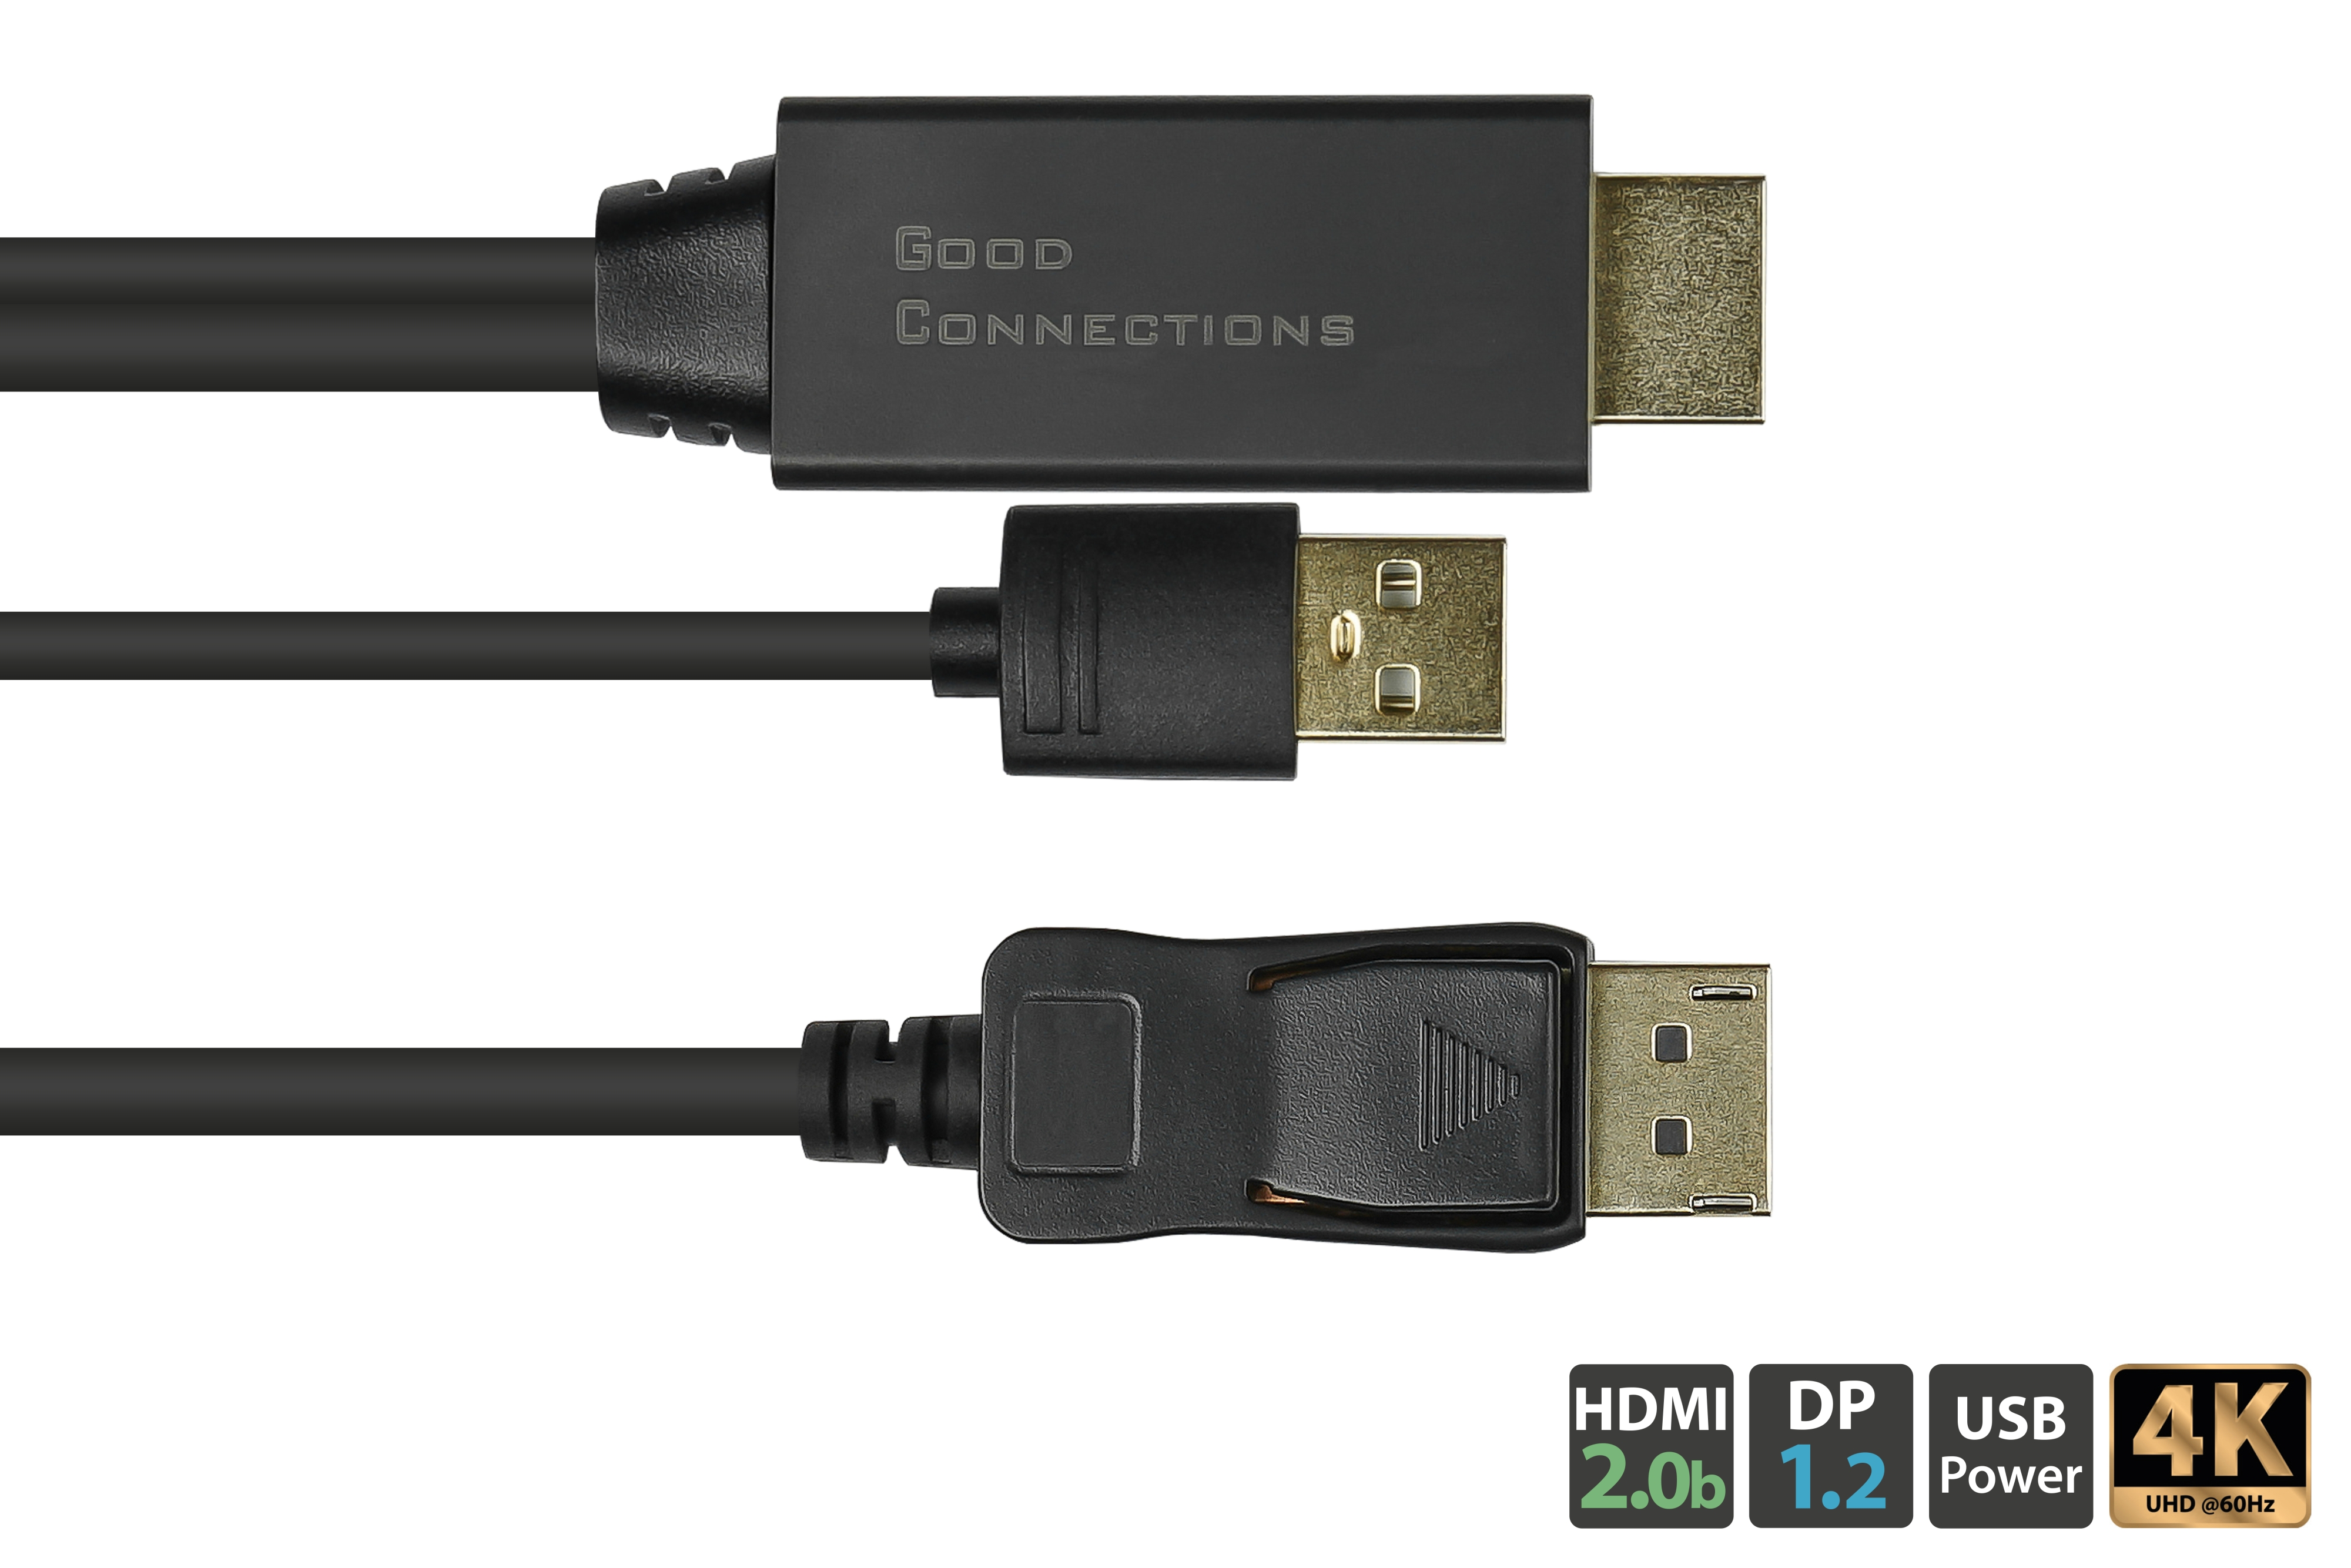 Stecker, schwarz, Stecker HDMI an m GOOD Anschlusskabel + Displayport, USB CONNECTIONS 1m, 2.0b Power 1.2 1